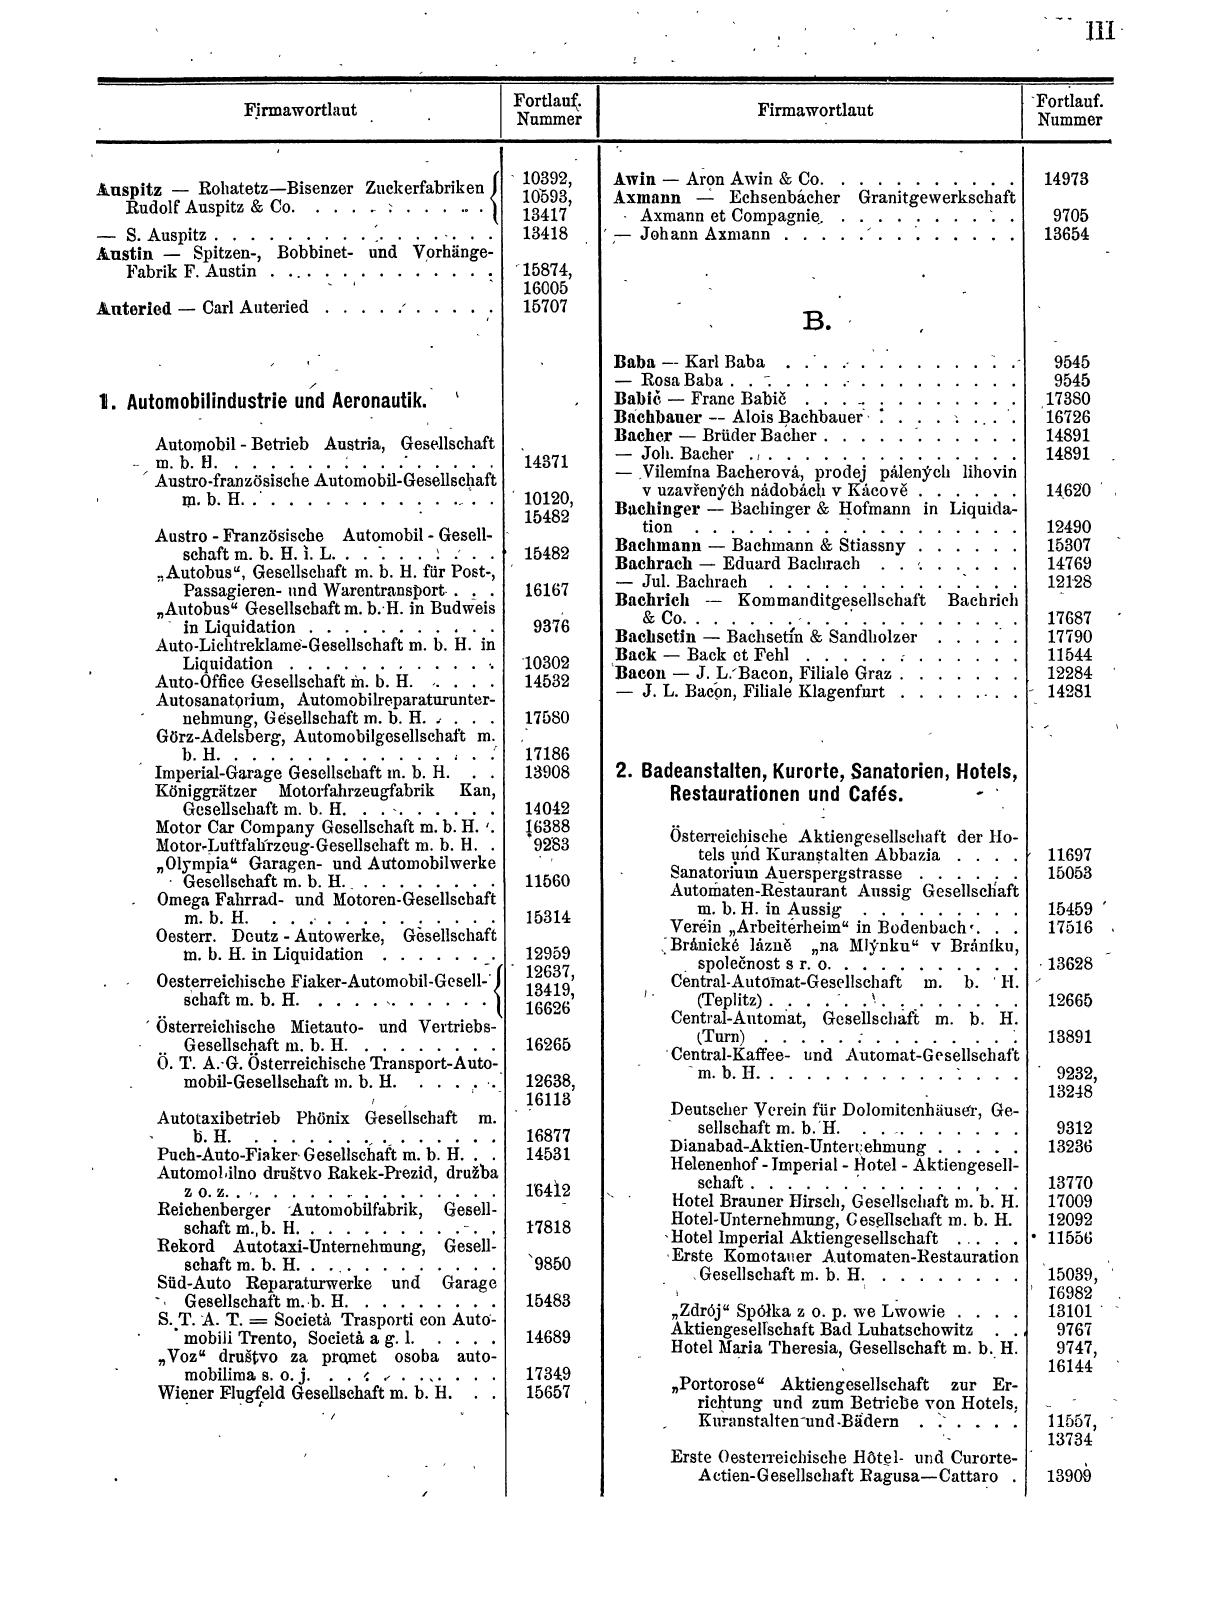 Zentralblatt für die Eintragungen in das Handelsregister 1913, Teil 2 - Seite 7